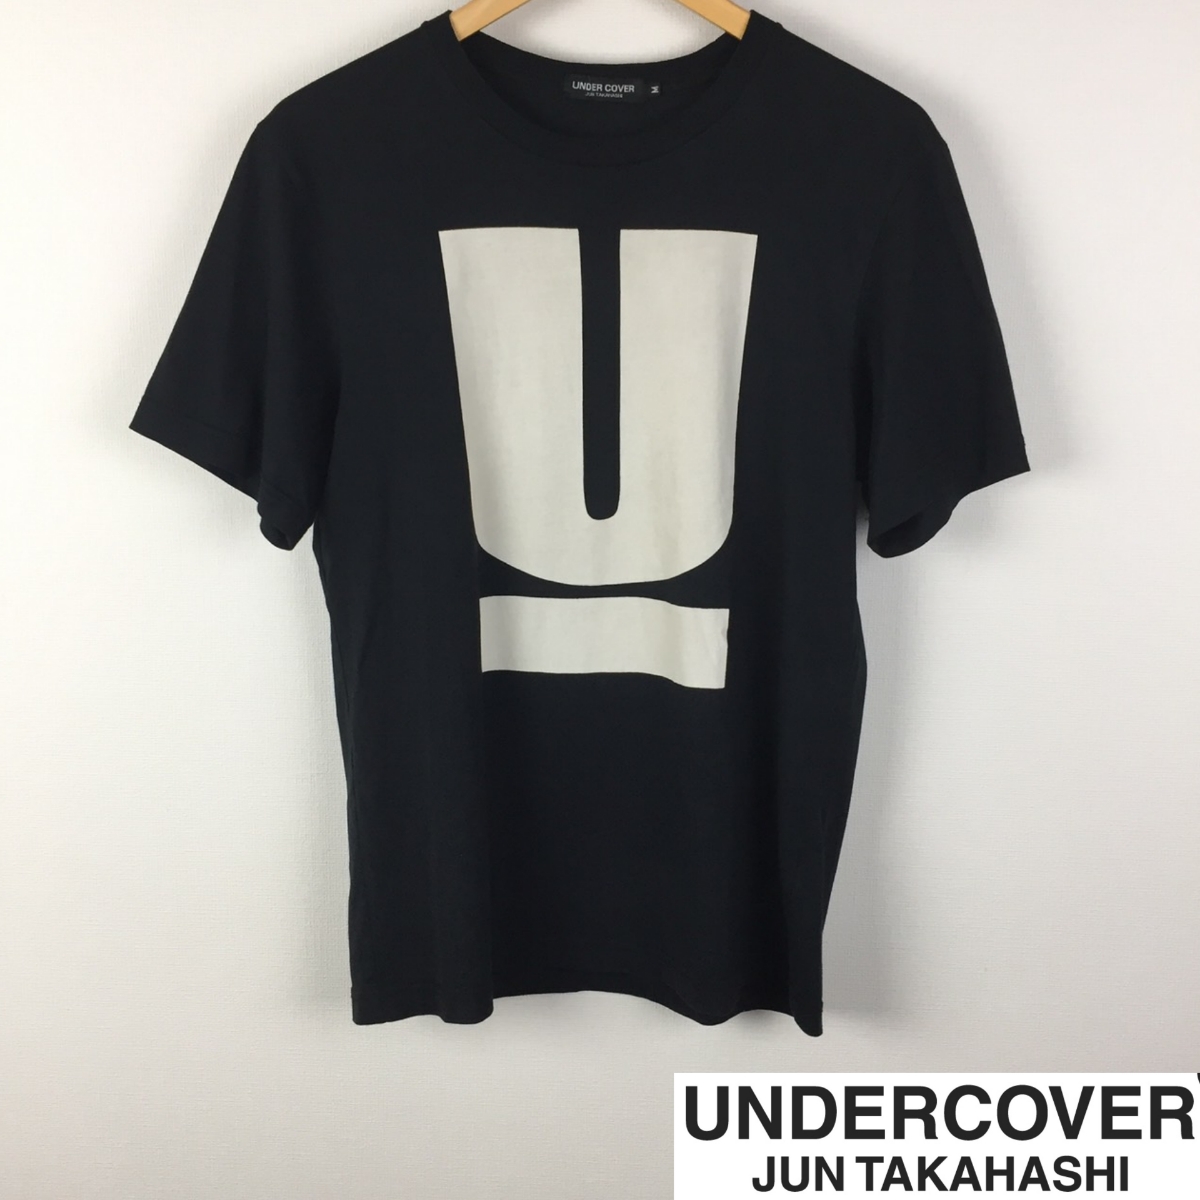  прекрасный товар undercover короткий рукав футболка черный размер M возможен возврат товара талант бесплатная доставка 